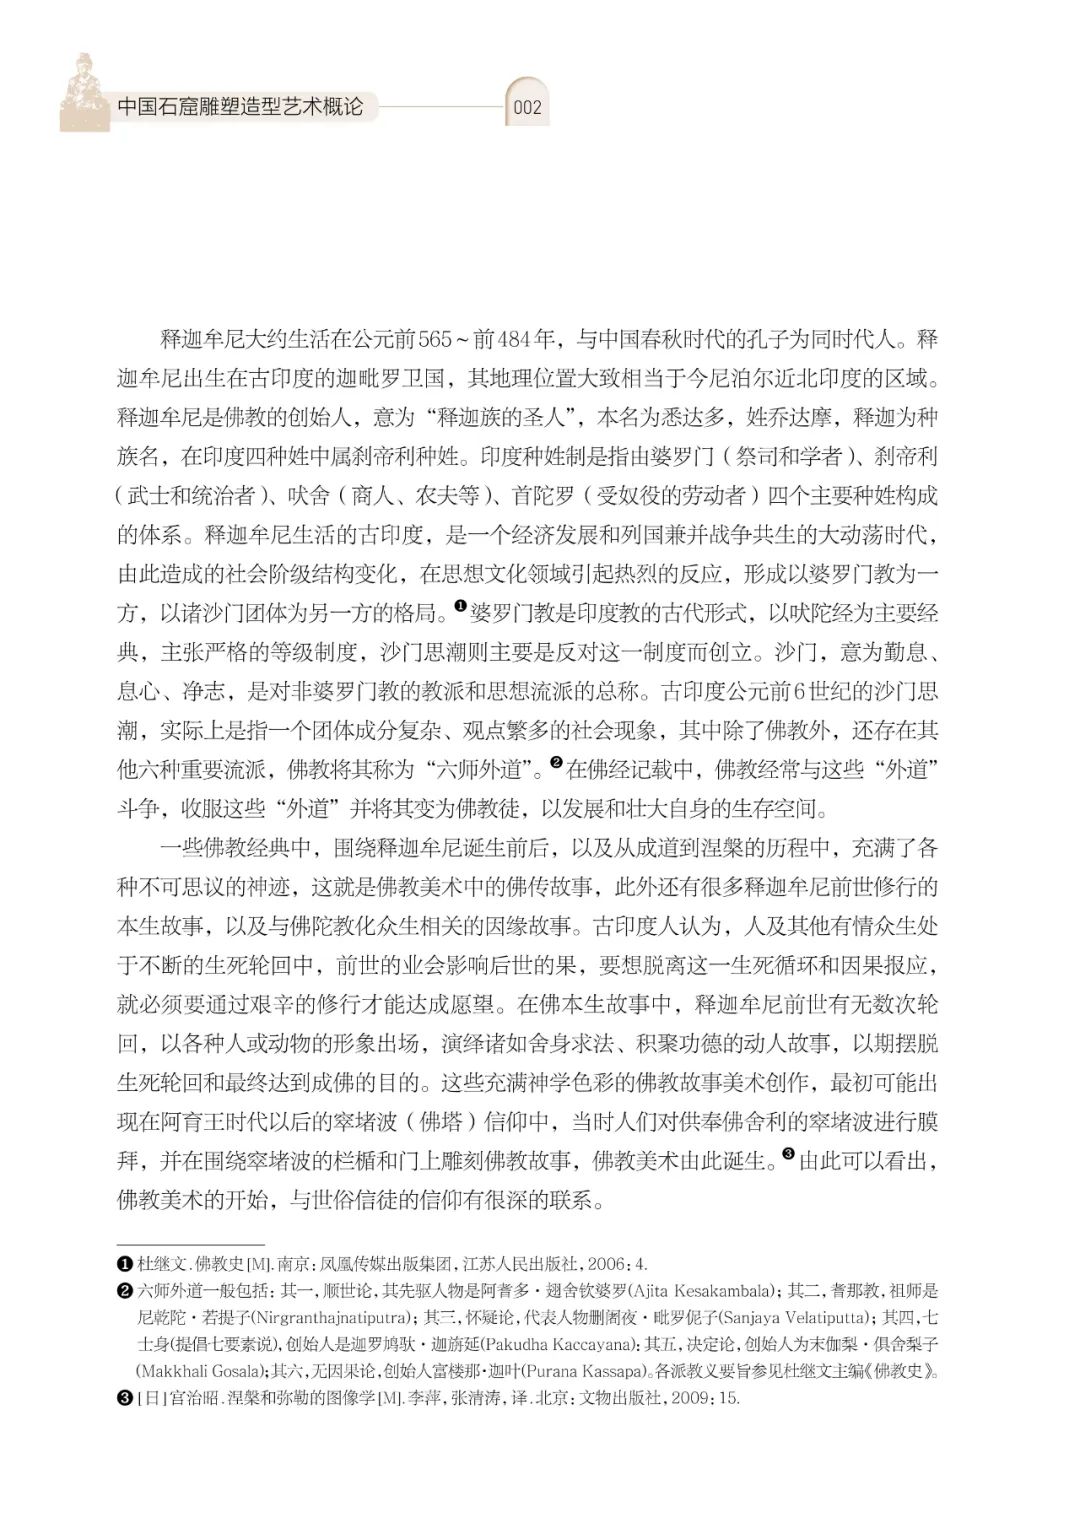 黄文智编著，《中国石窟雕塑造型艺术概论》出版